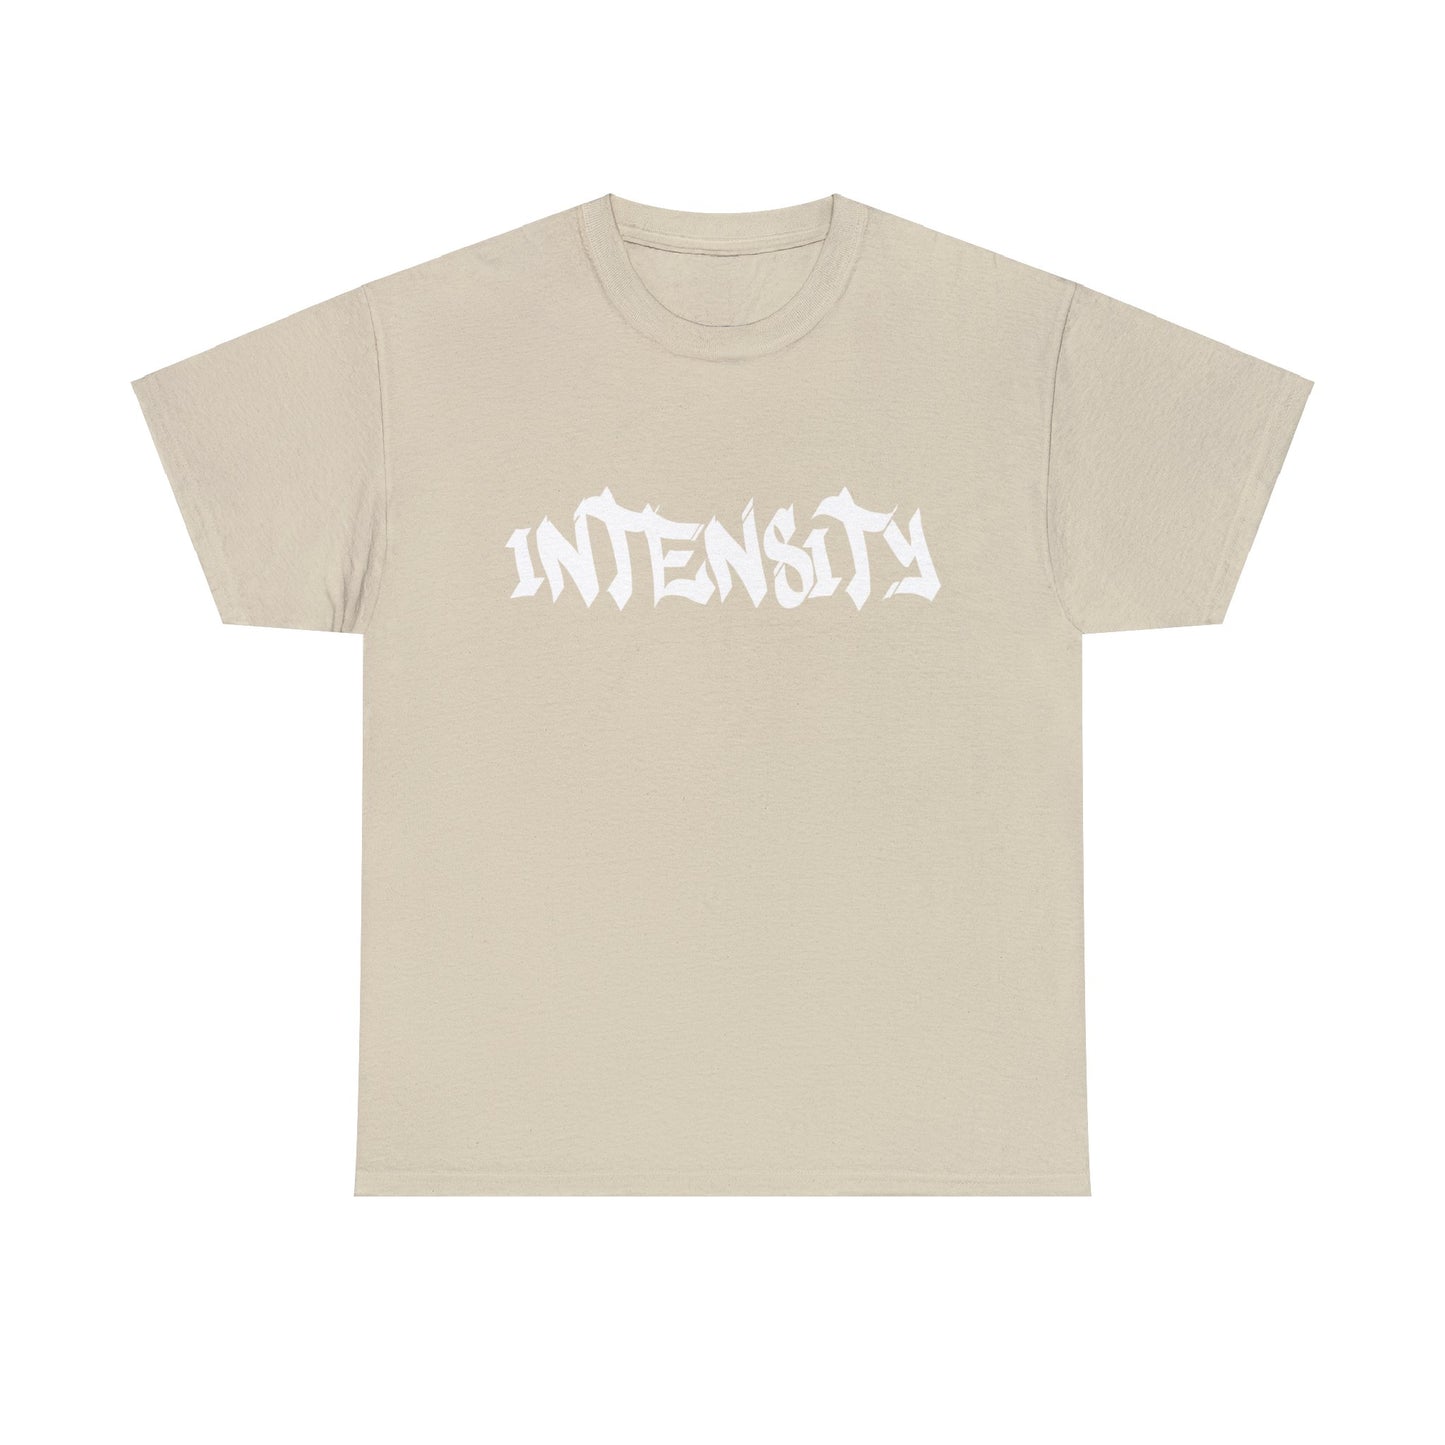 Men's "INTENSITY" T-Shirt White Logo